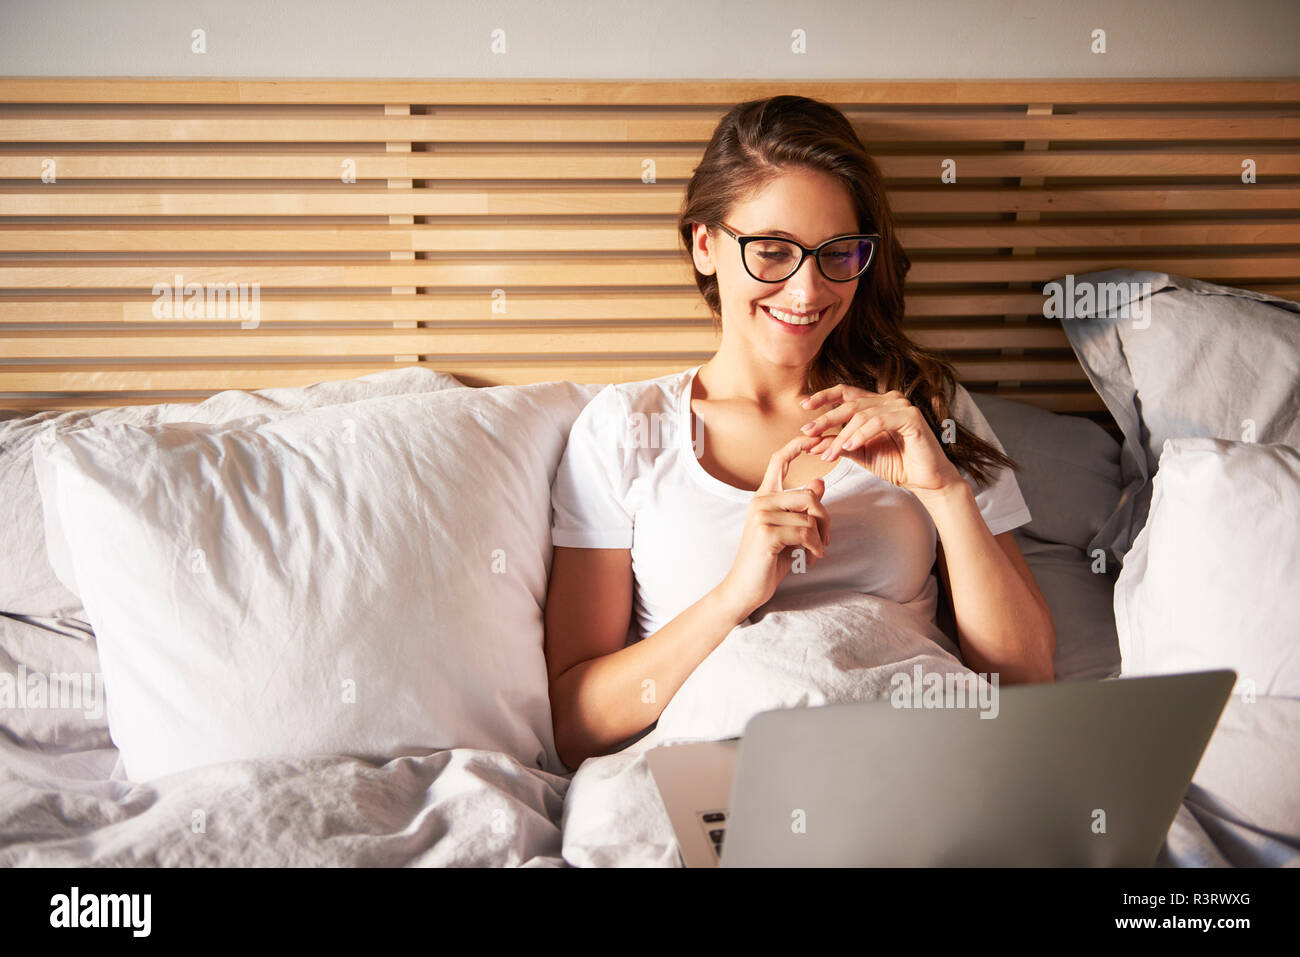 Portrait von lächelnden jungen Frau auf dem Bett liegend mit Laptop Stockfoto